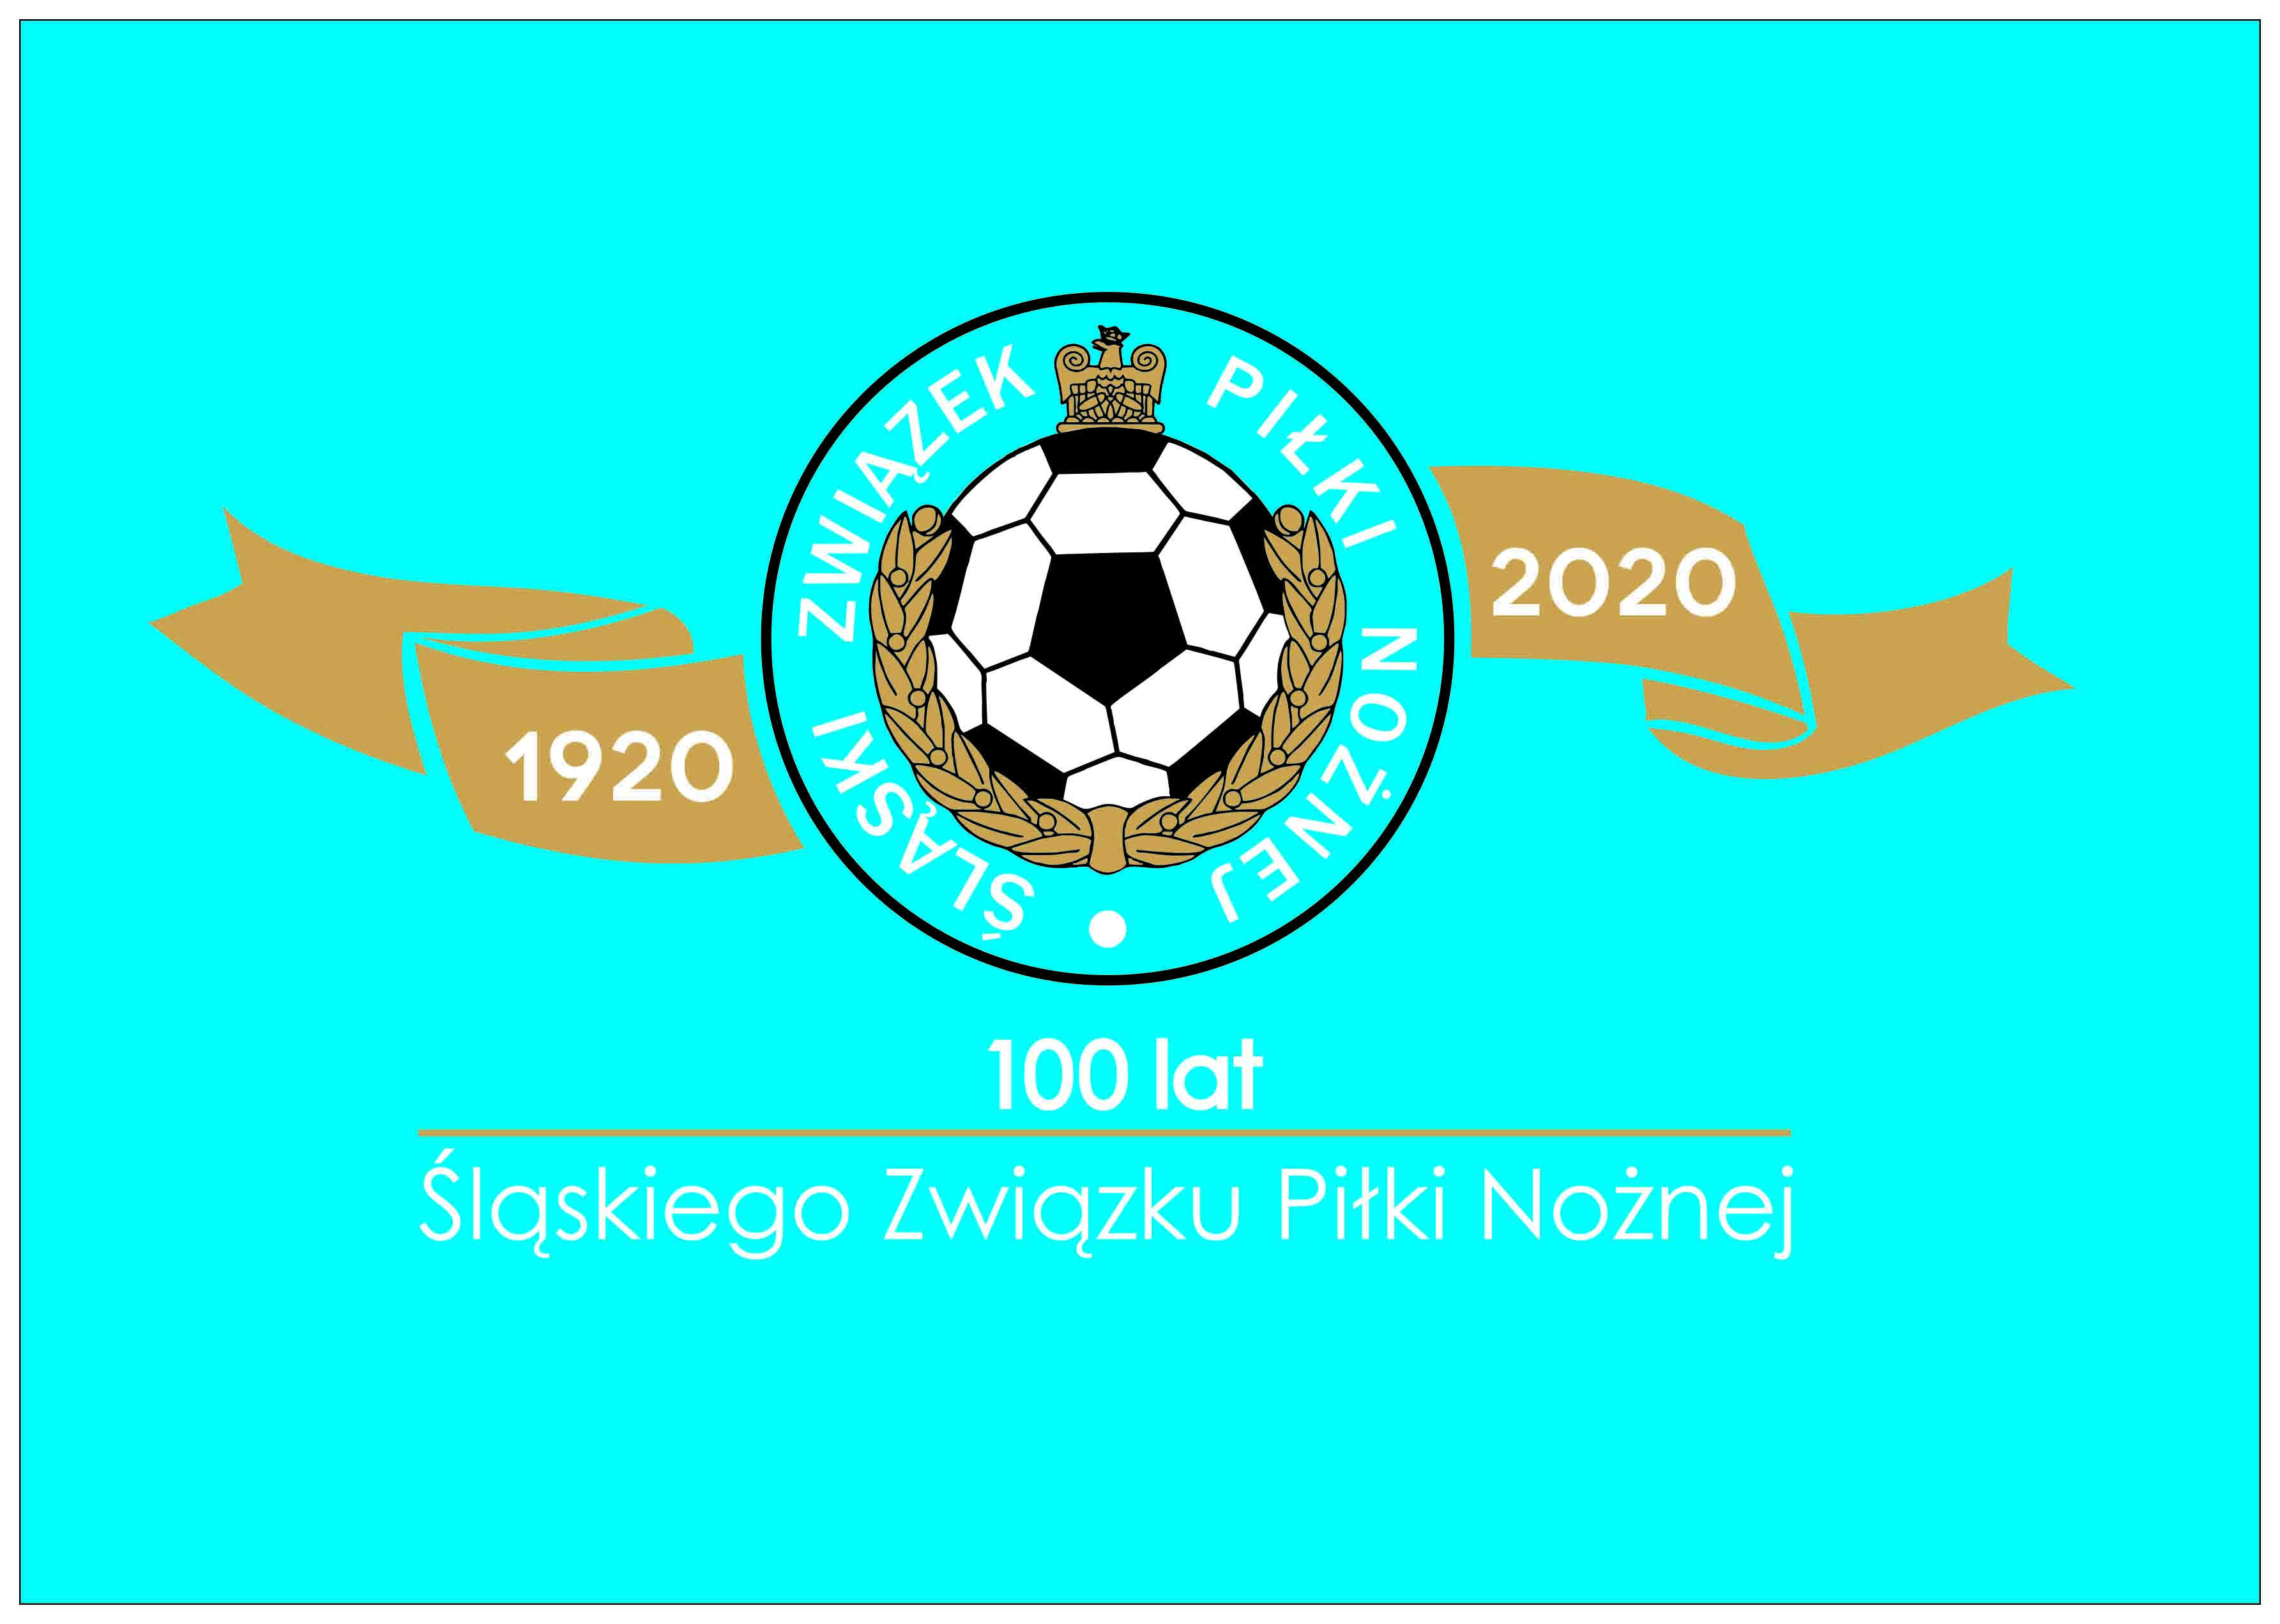 SMS Nobilito Złotym Partnerem jubileuszu 100-lecia Śląskiego Związku Piłki Nożnej